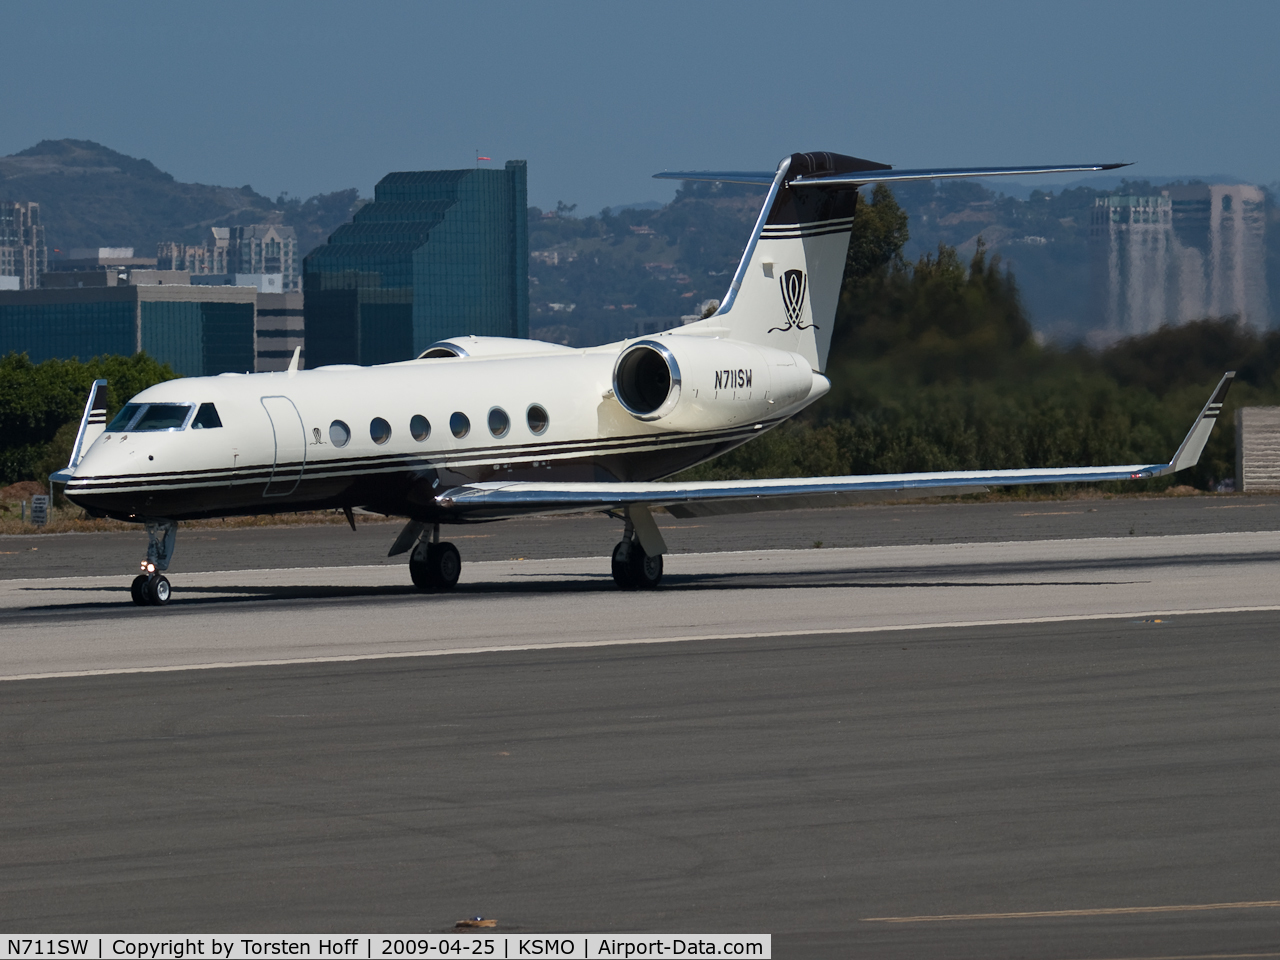 N711SW, 2007 Gulfstream Aerospace GIV-X (G450) C/N 4085, N711SW departing from RWY 21